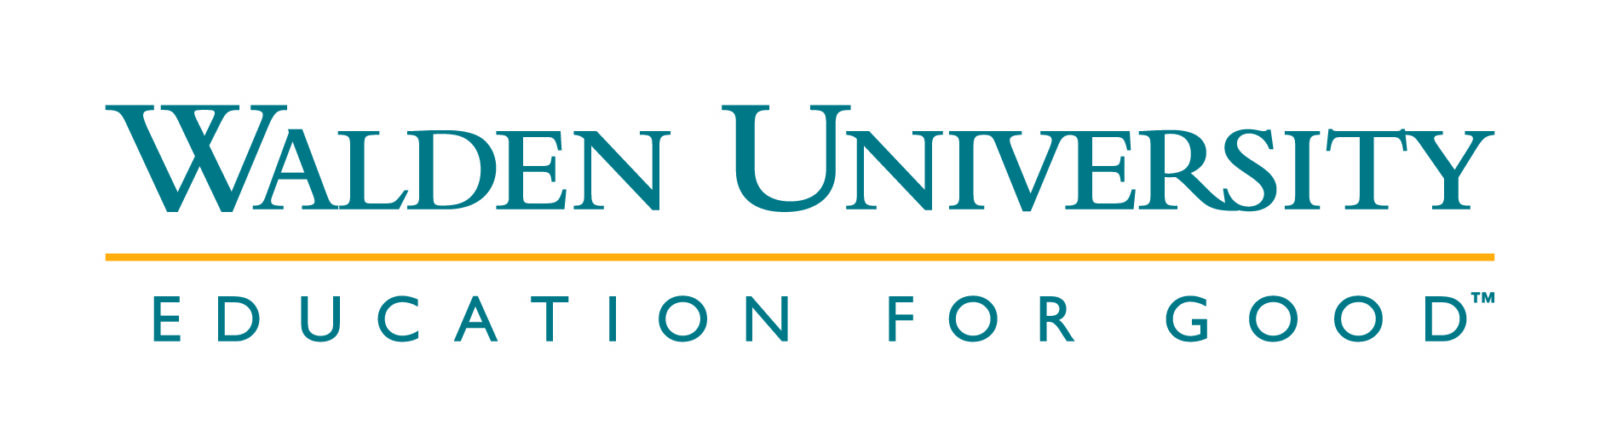 Logotipo de la Universidad de Walden